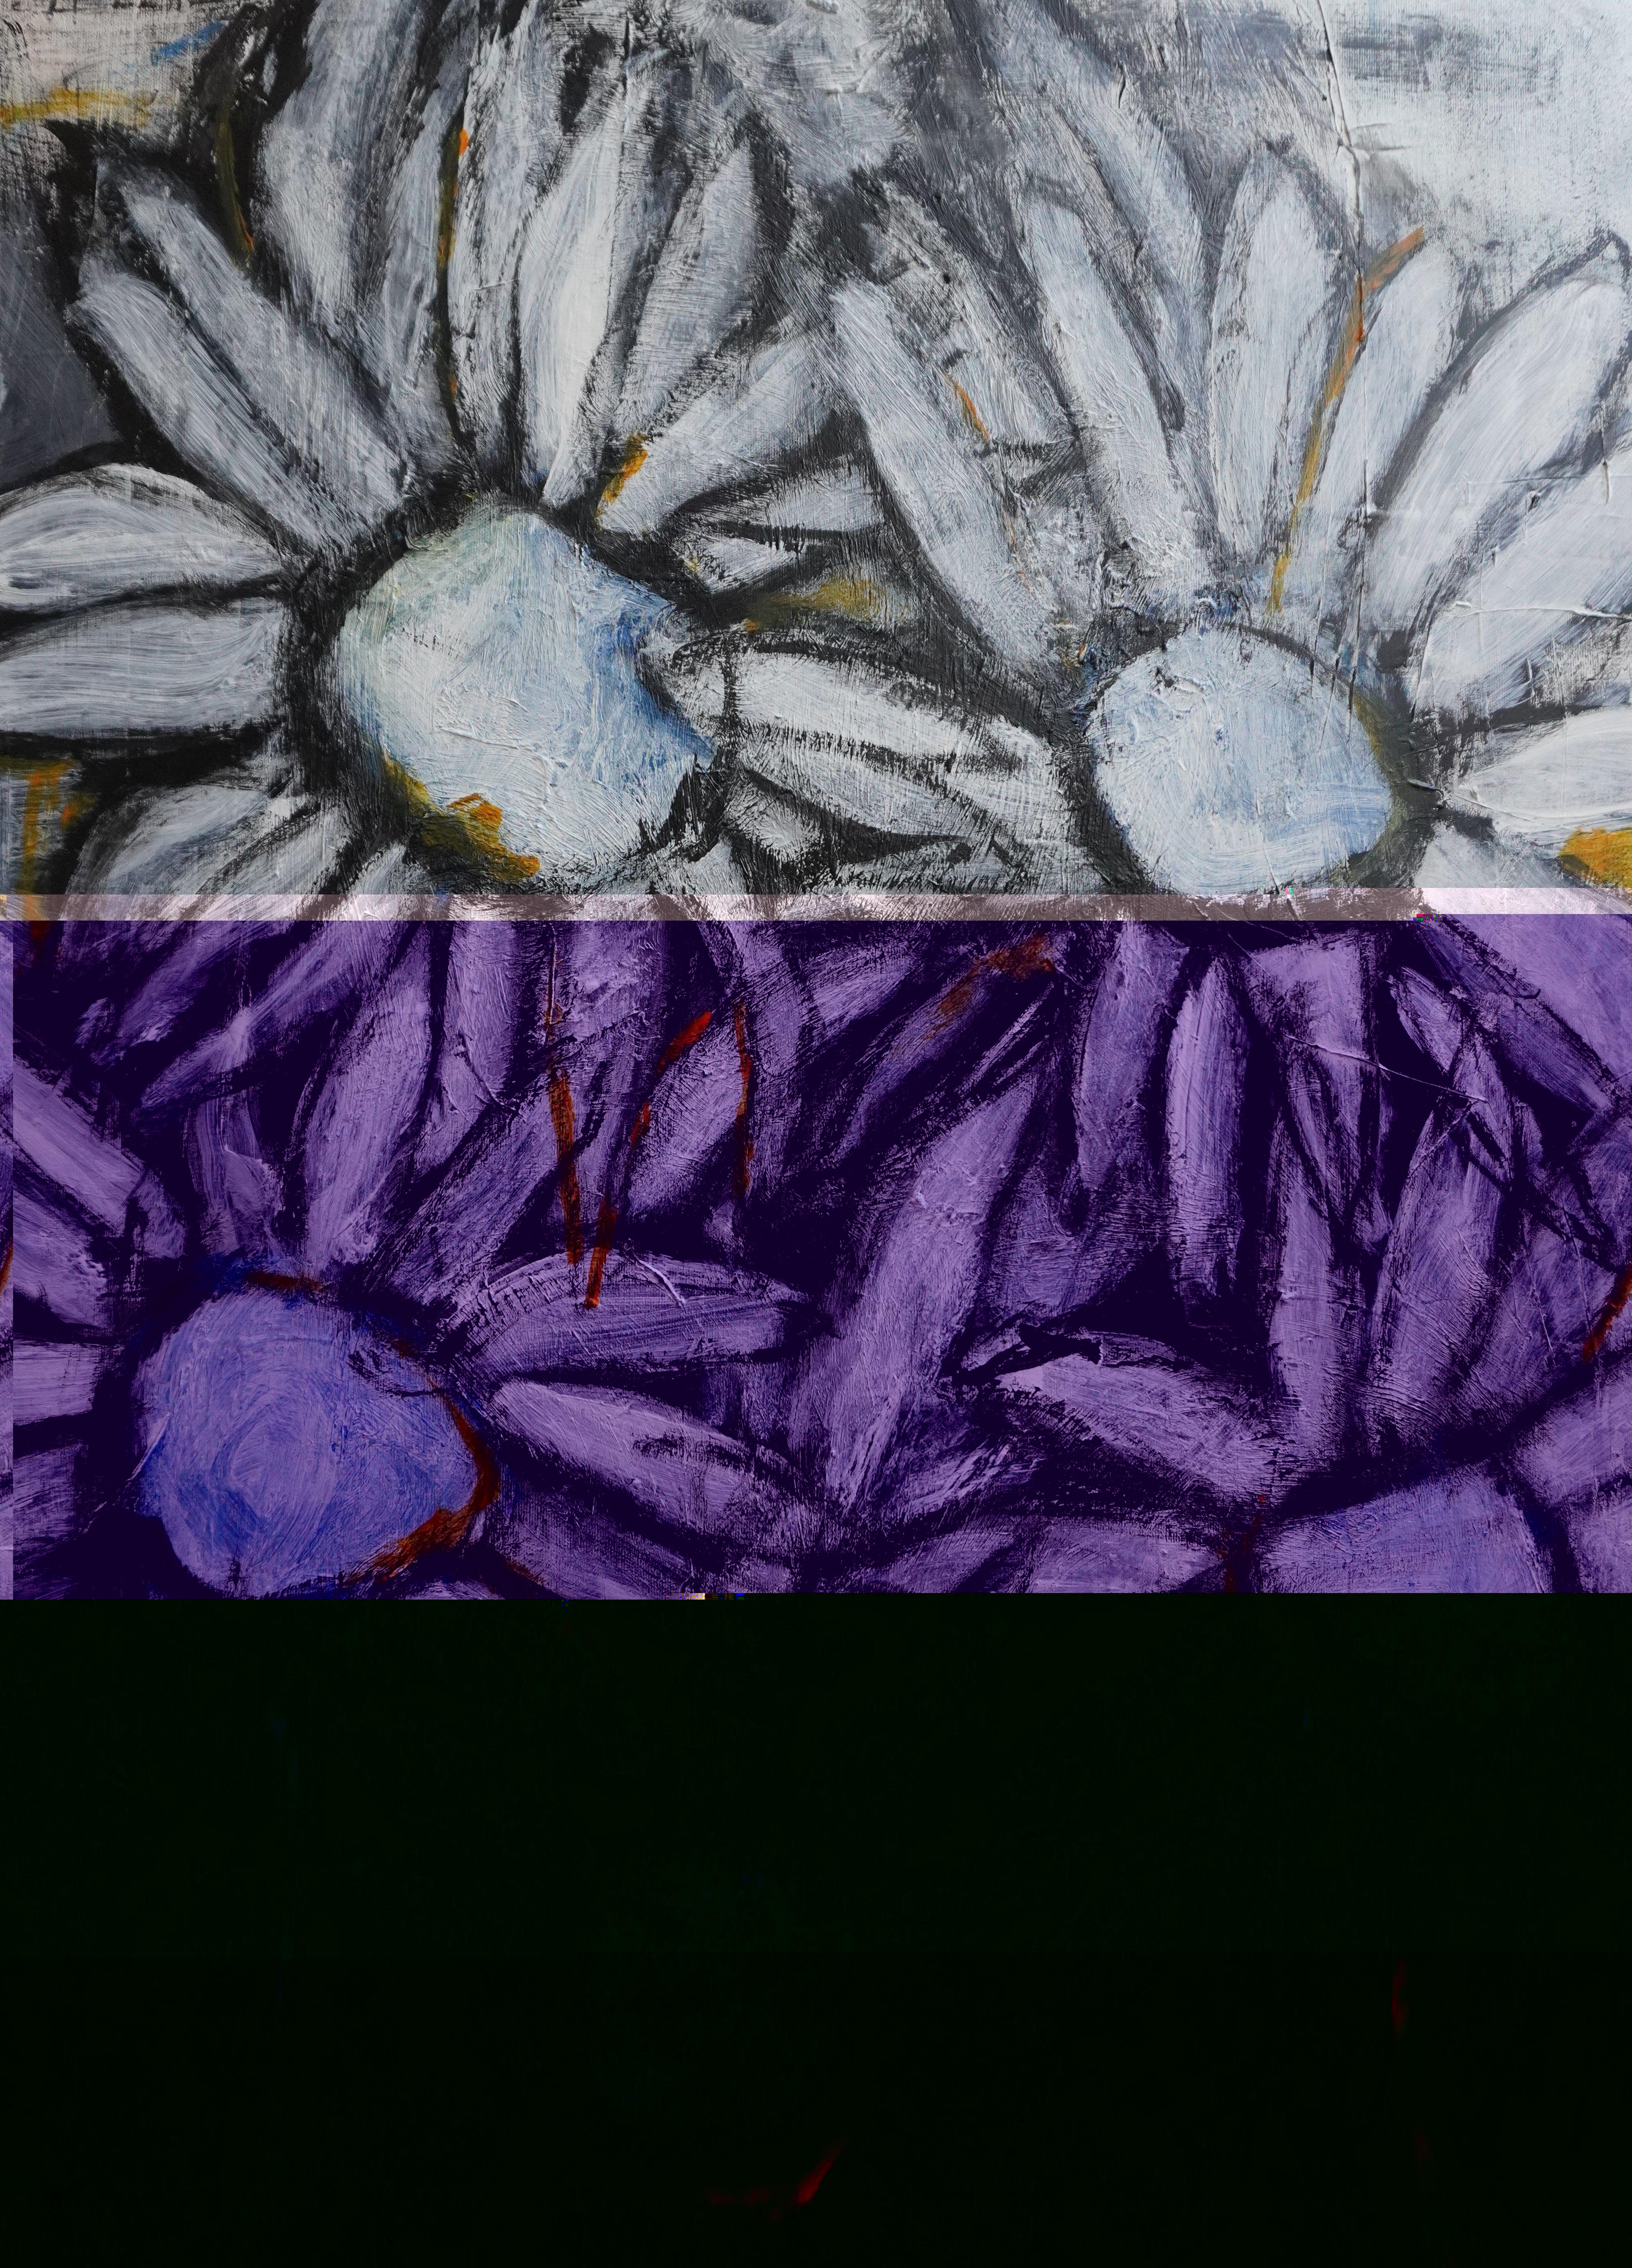 Wildblumen tanzen in abstrakter Form. In dieser Serie unterstreicht Gray auf subtile Weise die Bewegung der Wildblumen, anstatt sie als Stillleben zu malen, wie es meist der Fall ist. Seine neueste Serie zeichnet sich durch eine gewisse kühne und